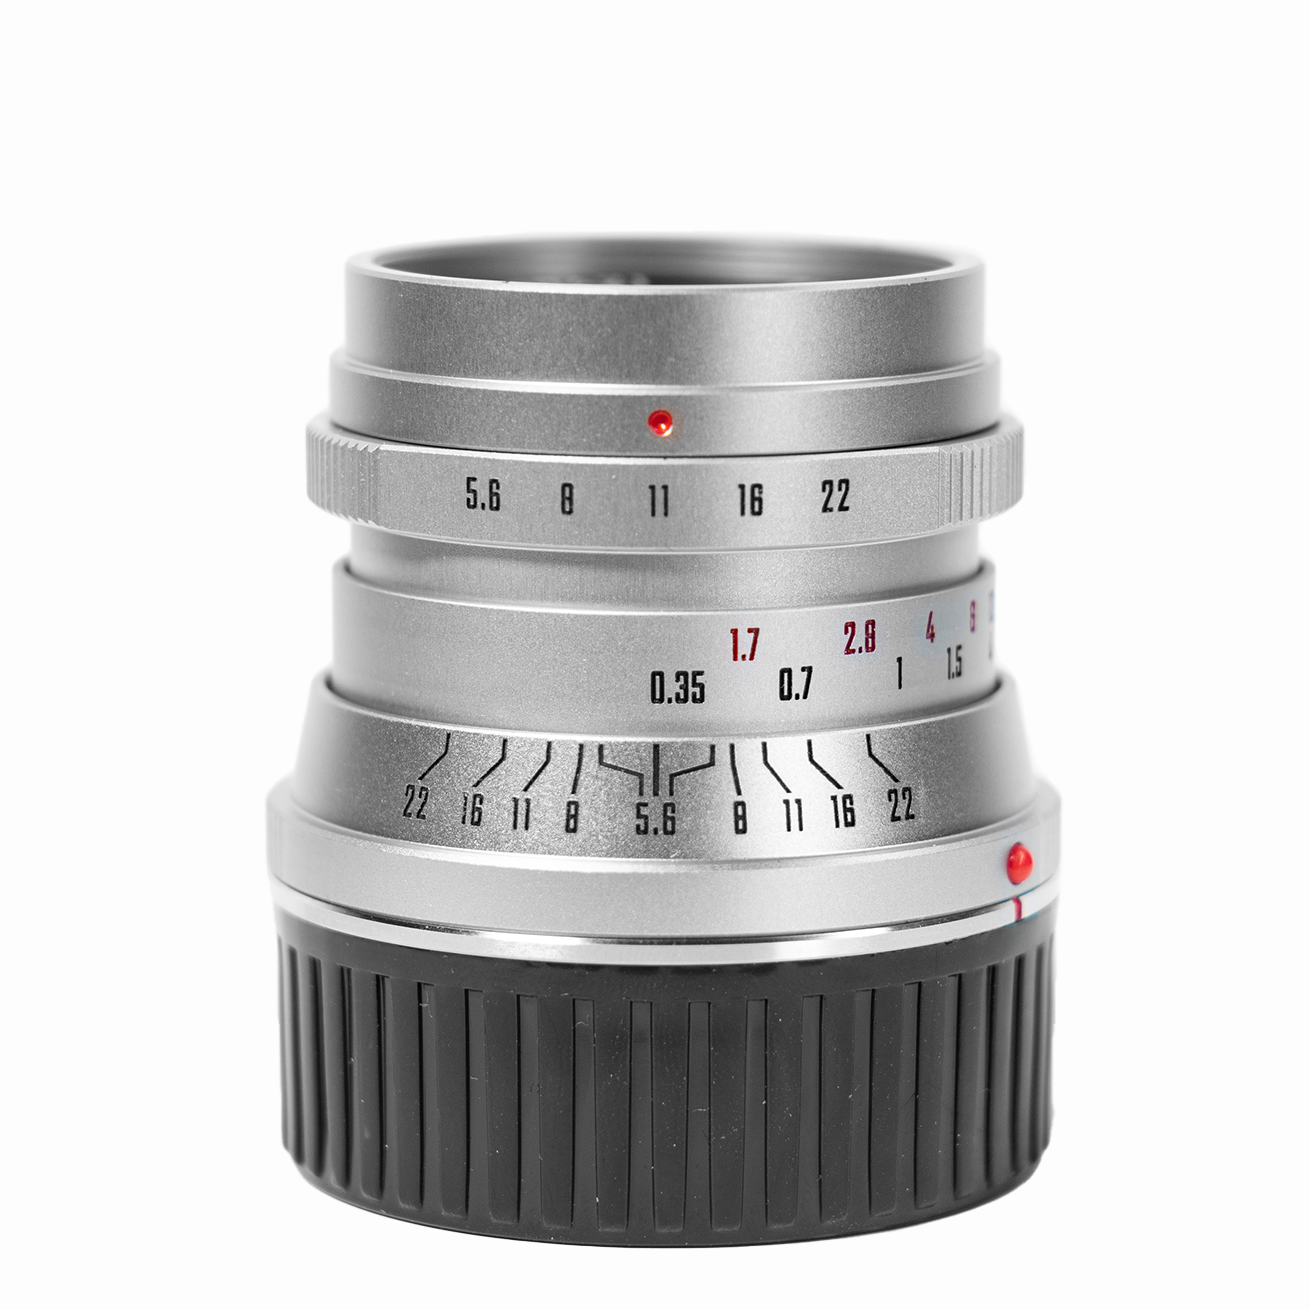 Mitakon Zhongyi Creator 28mm f/5.6 Lens for Leica L